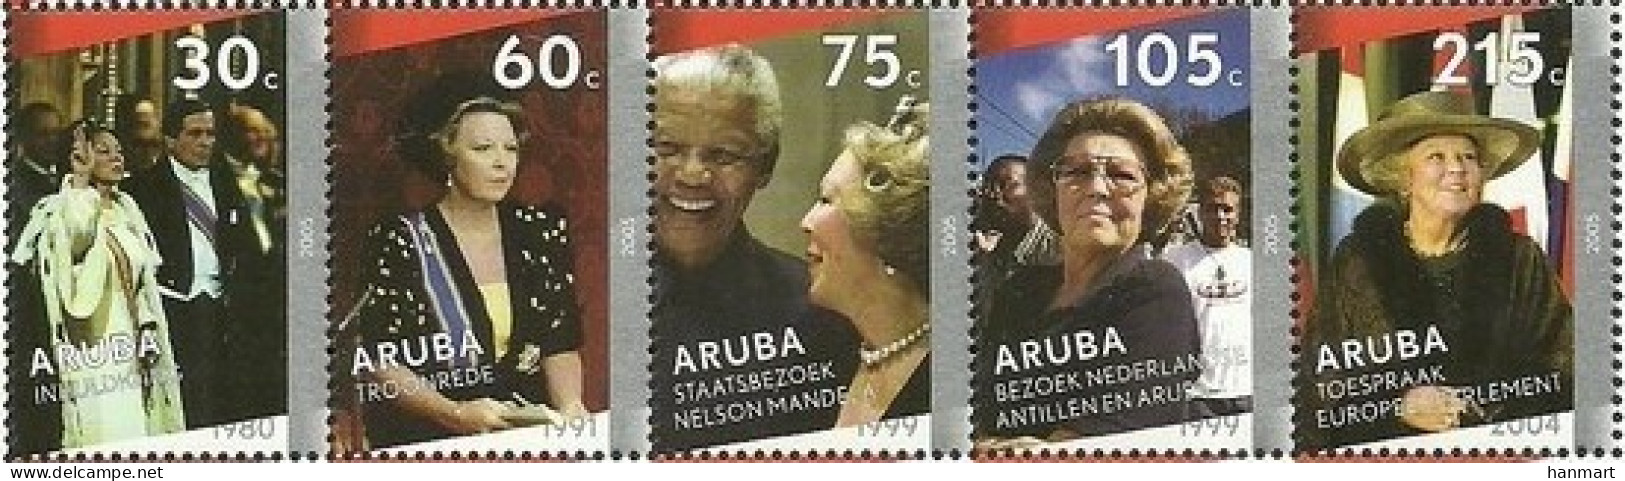 Aruba 2005 Mi 346-350 MNH  (ZS2 ARBfun346-350) - Nobel Prize Laureates